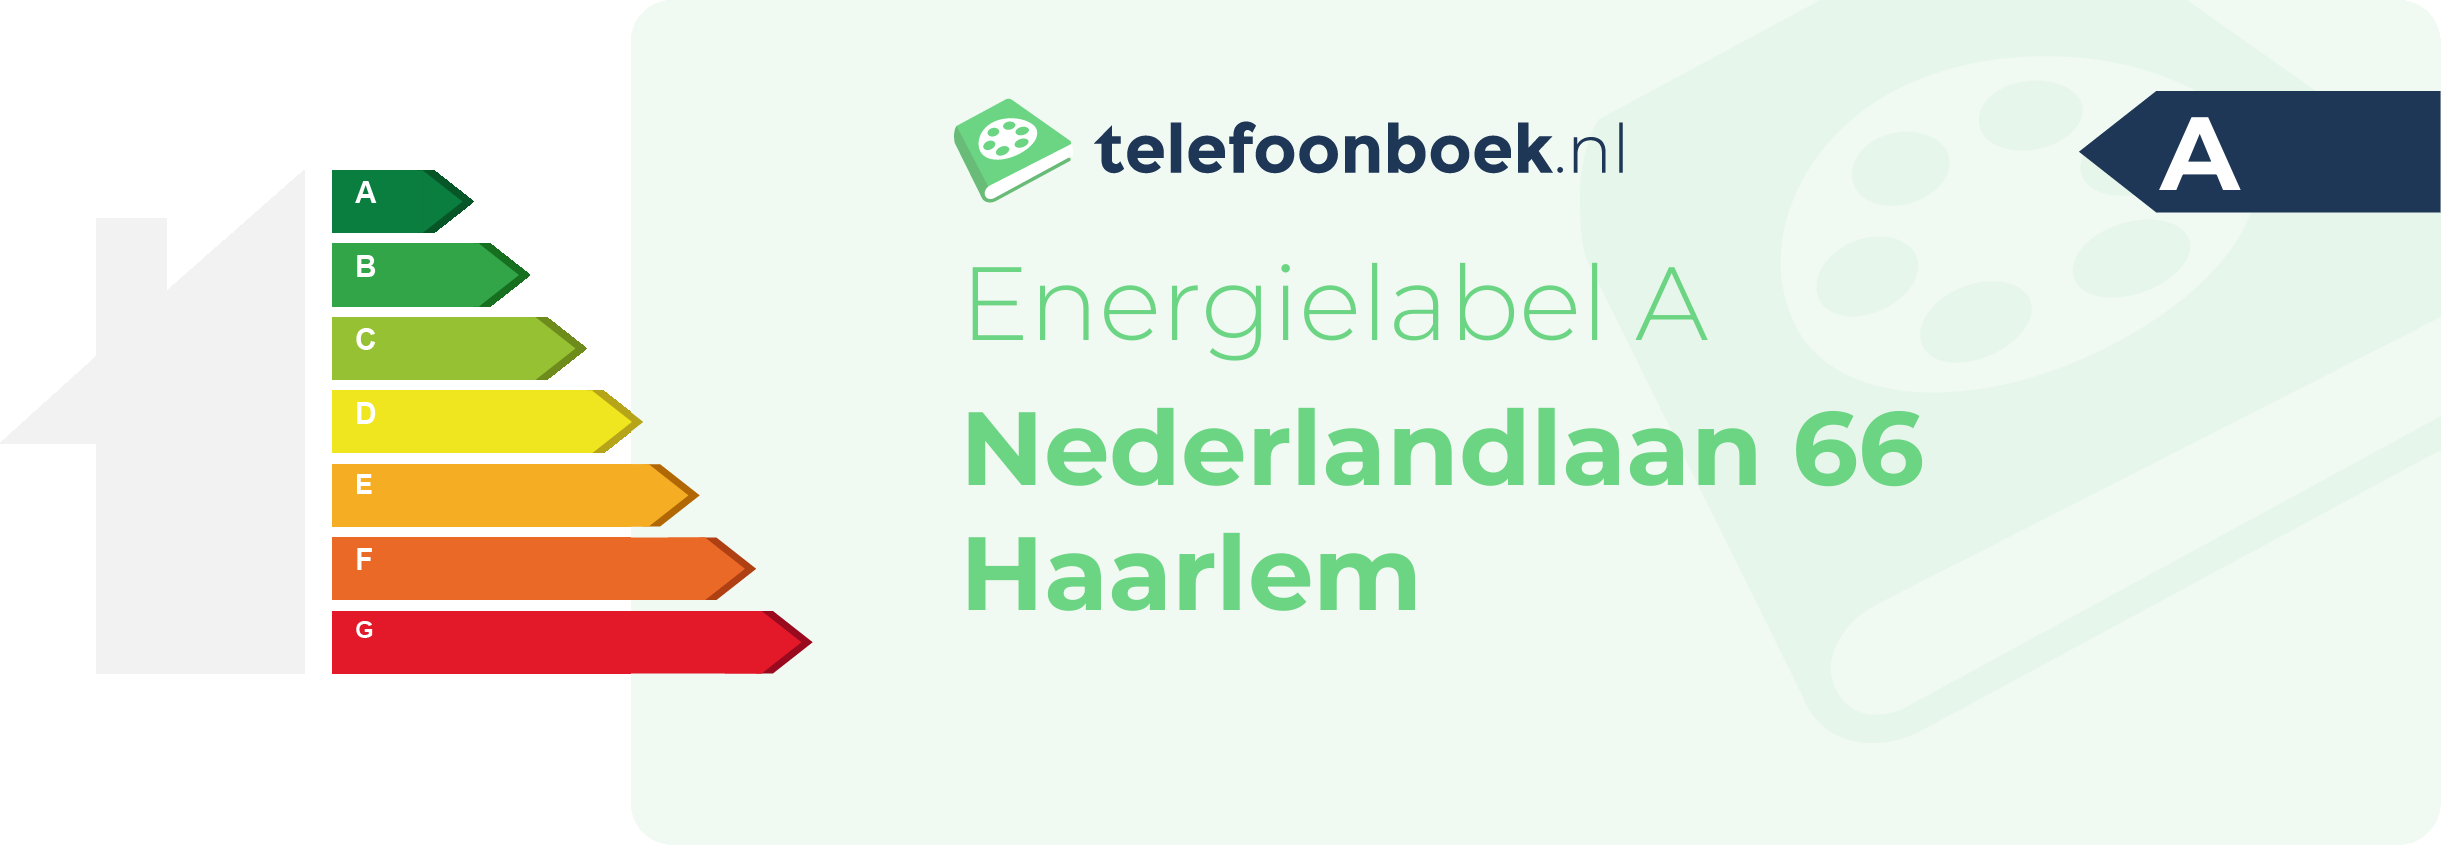 Energielabel Nederlandlaan 66 Haarlem